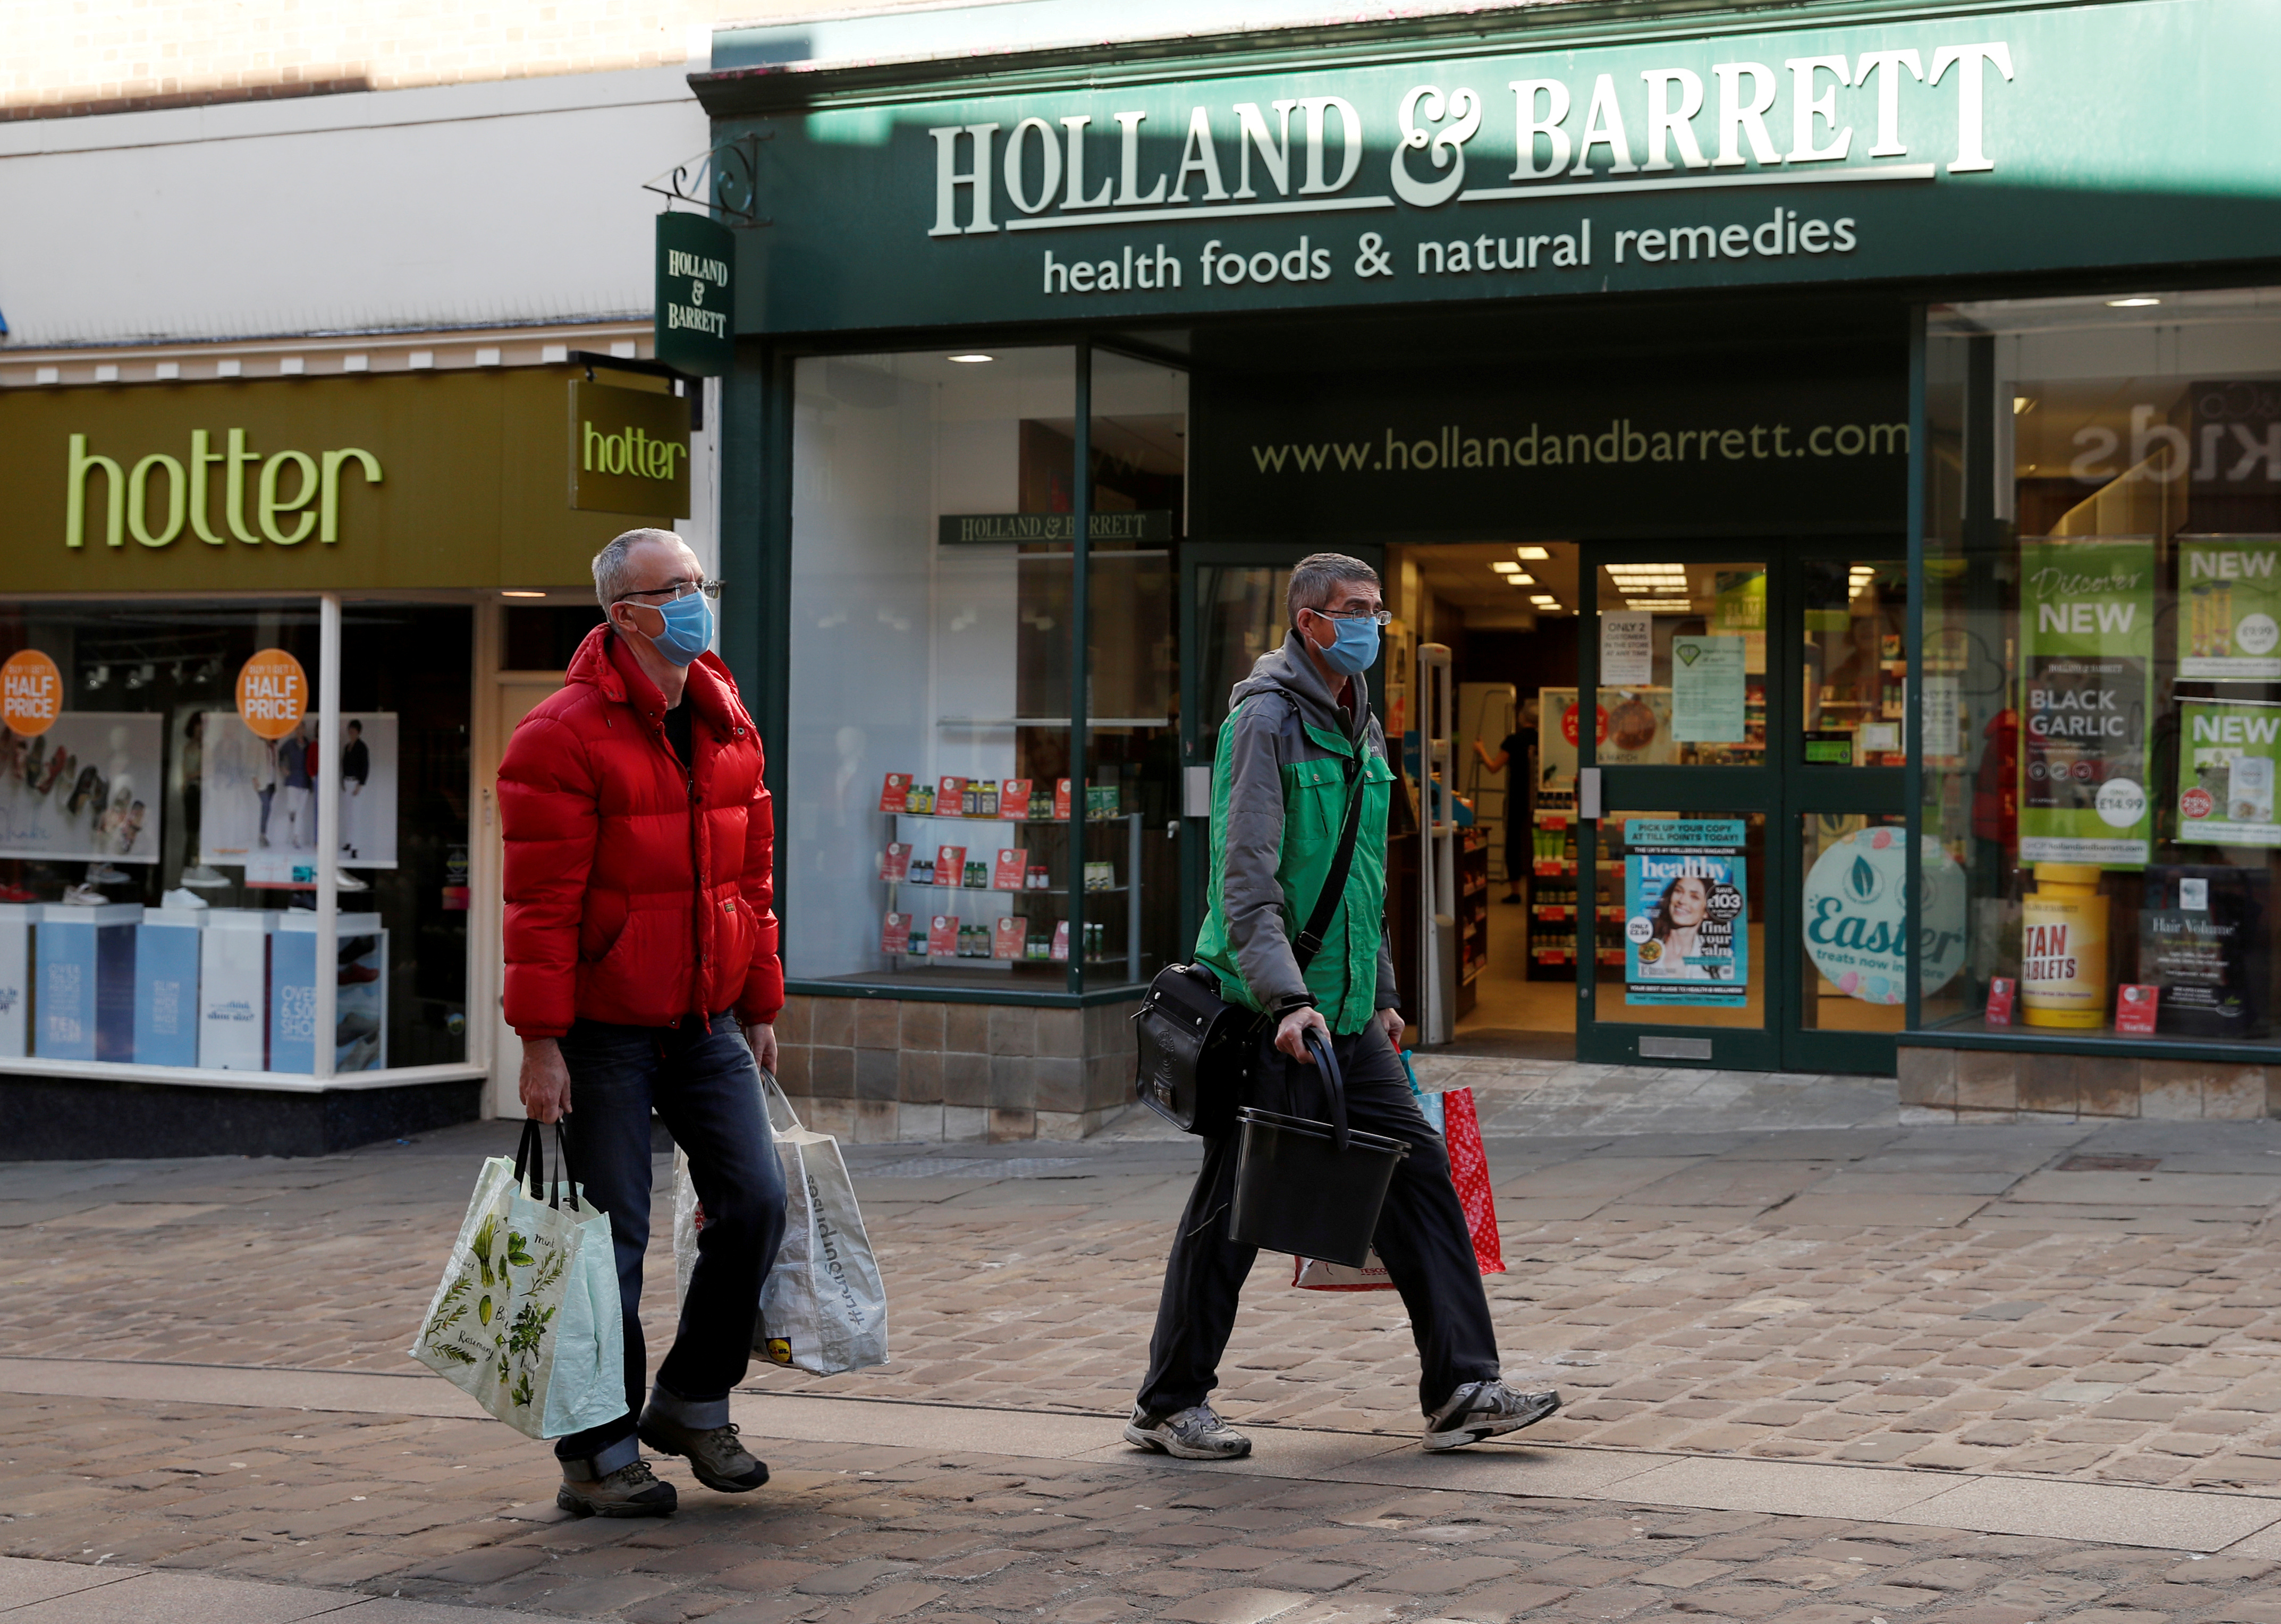 Gente con máscaras haciendo compras Durham (REUTERS/Lee Smith/File Photo)